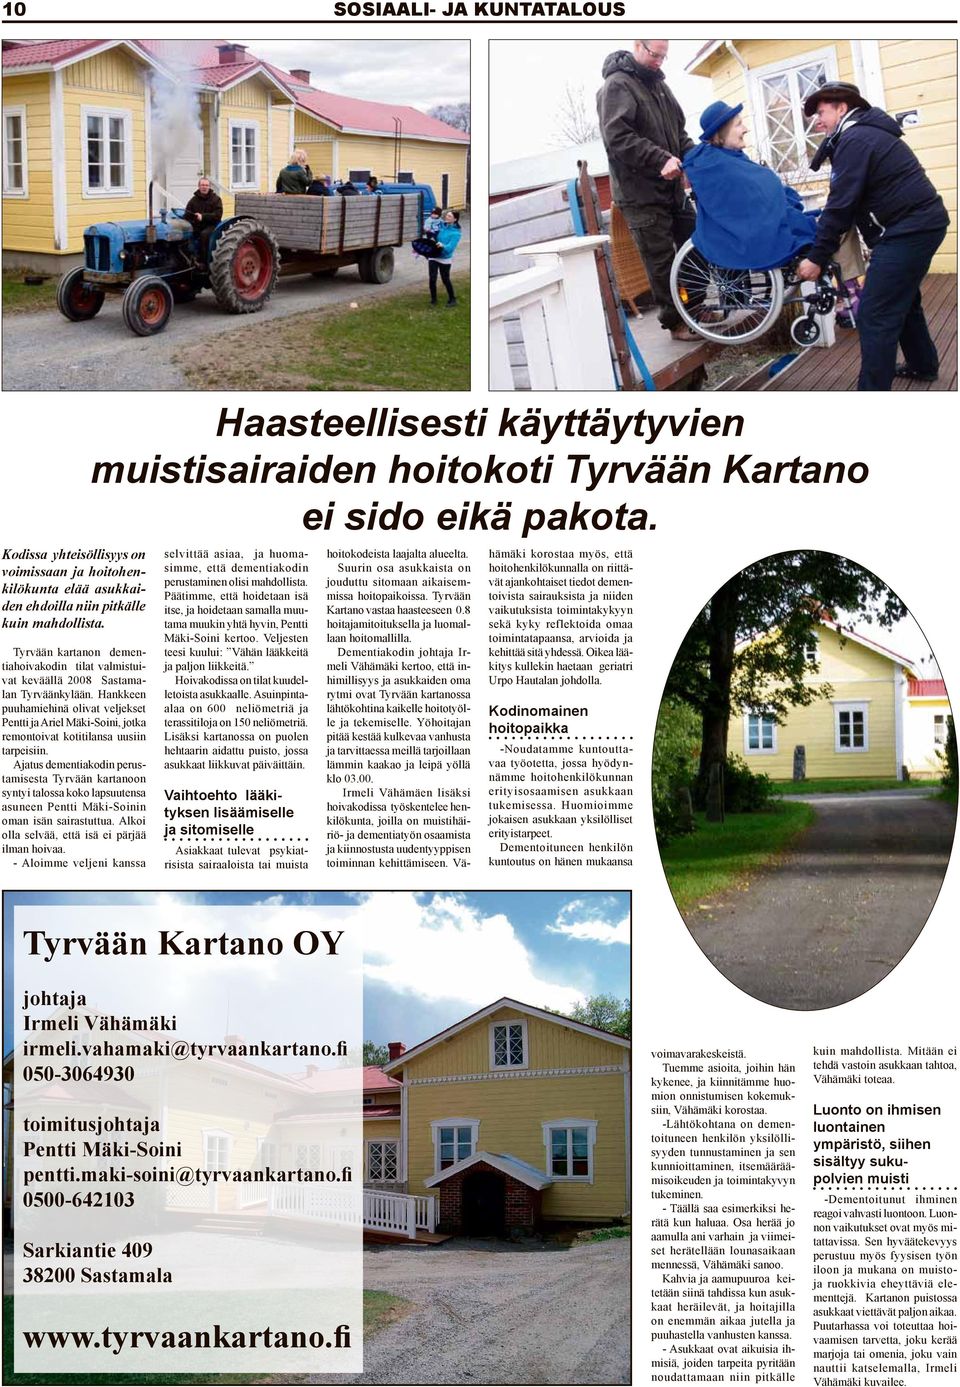 Hankkeen puuhamiehinä olivat veljekset Pentti ja Ariel Mäki-Soini, jotka remontoivat kotitilansa uusiin tarpeisiin.